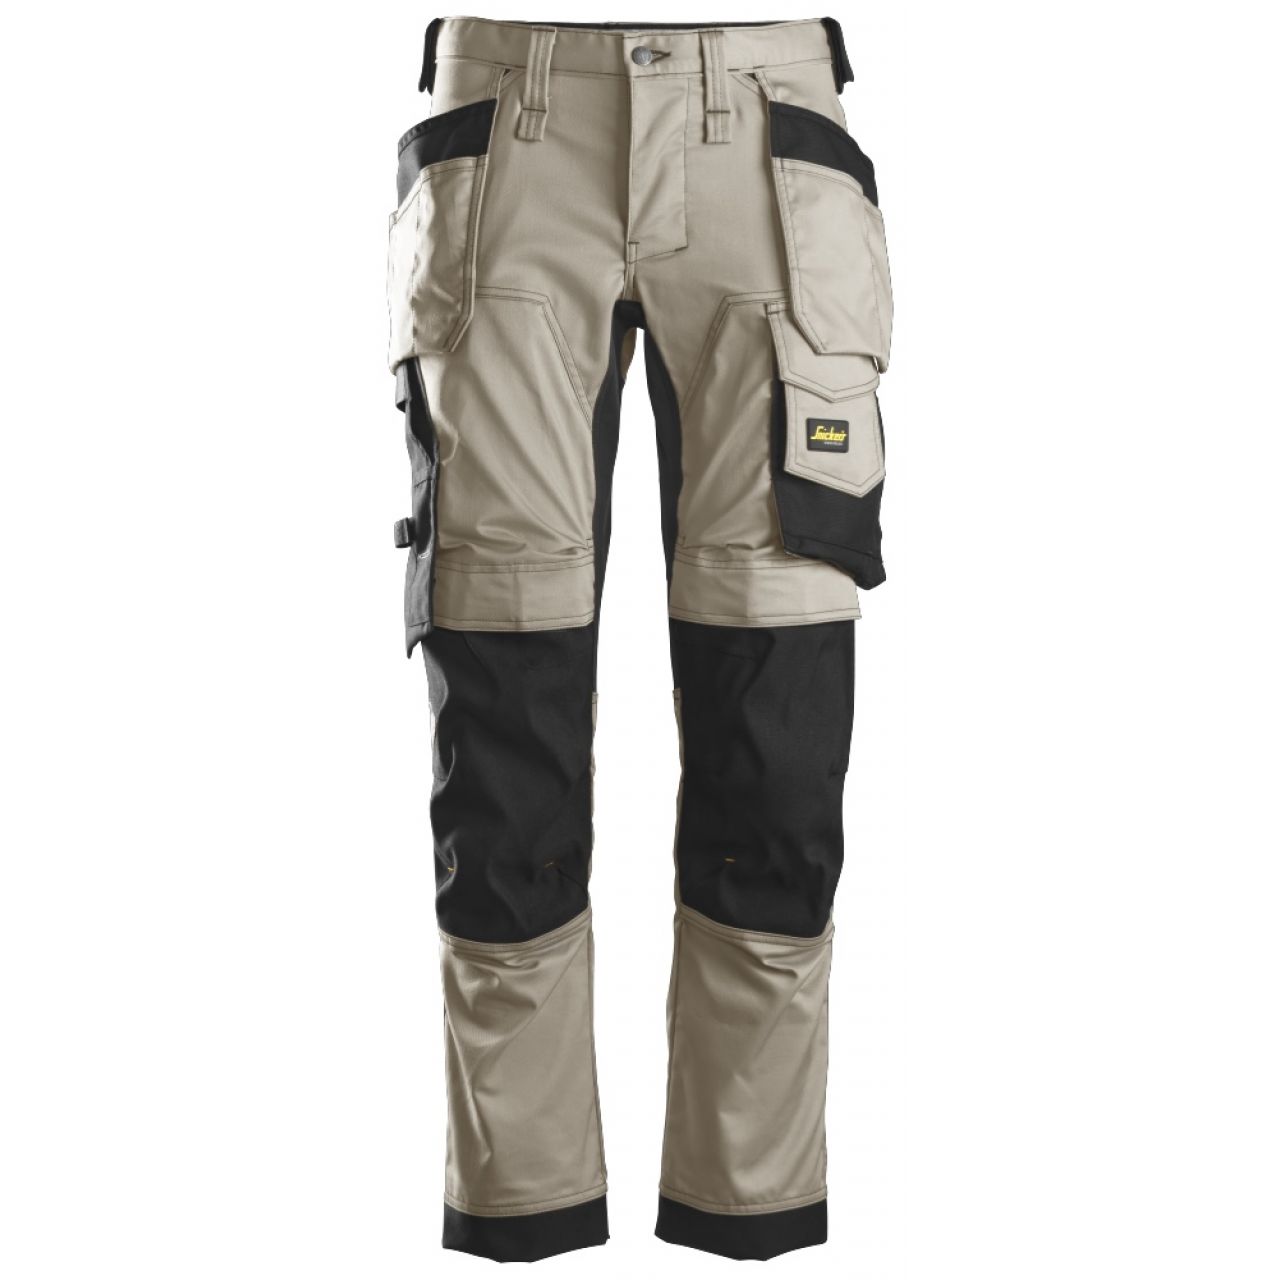 6241 Pantalones largos de trabajo elásticos con bolsillos flotantes AllroundWork beige-negro talla 54